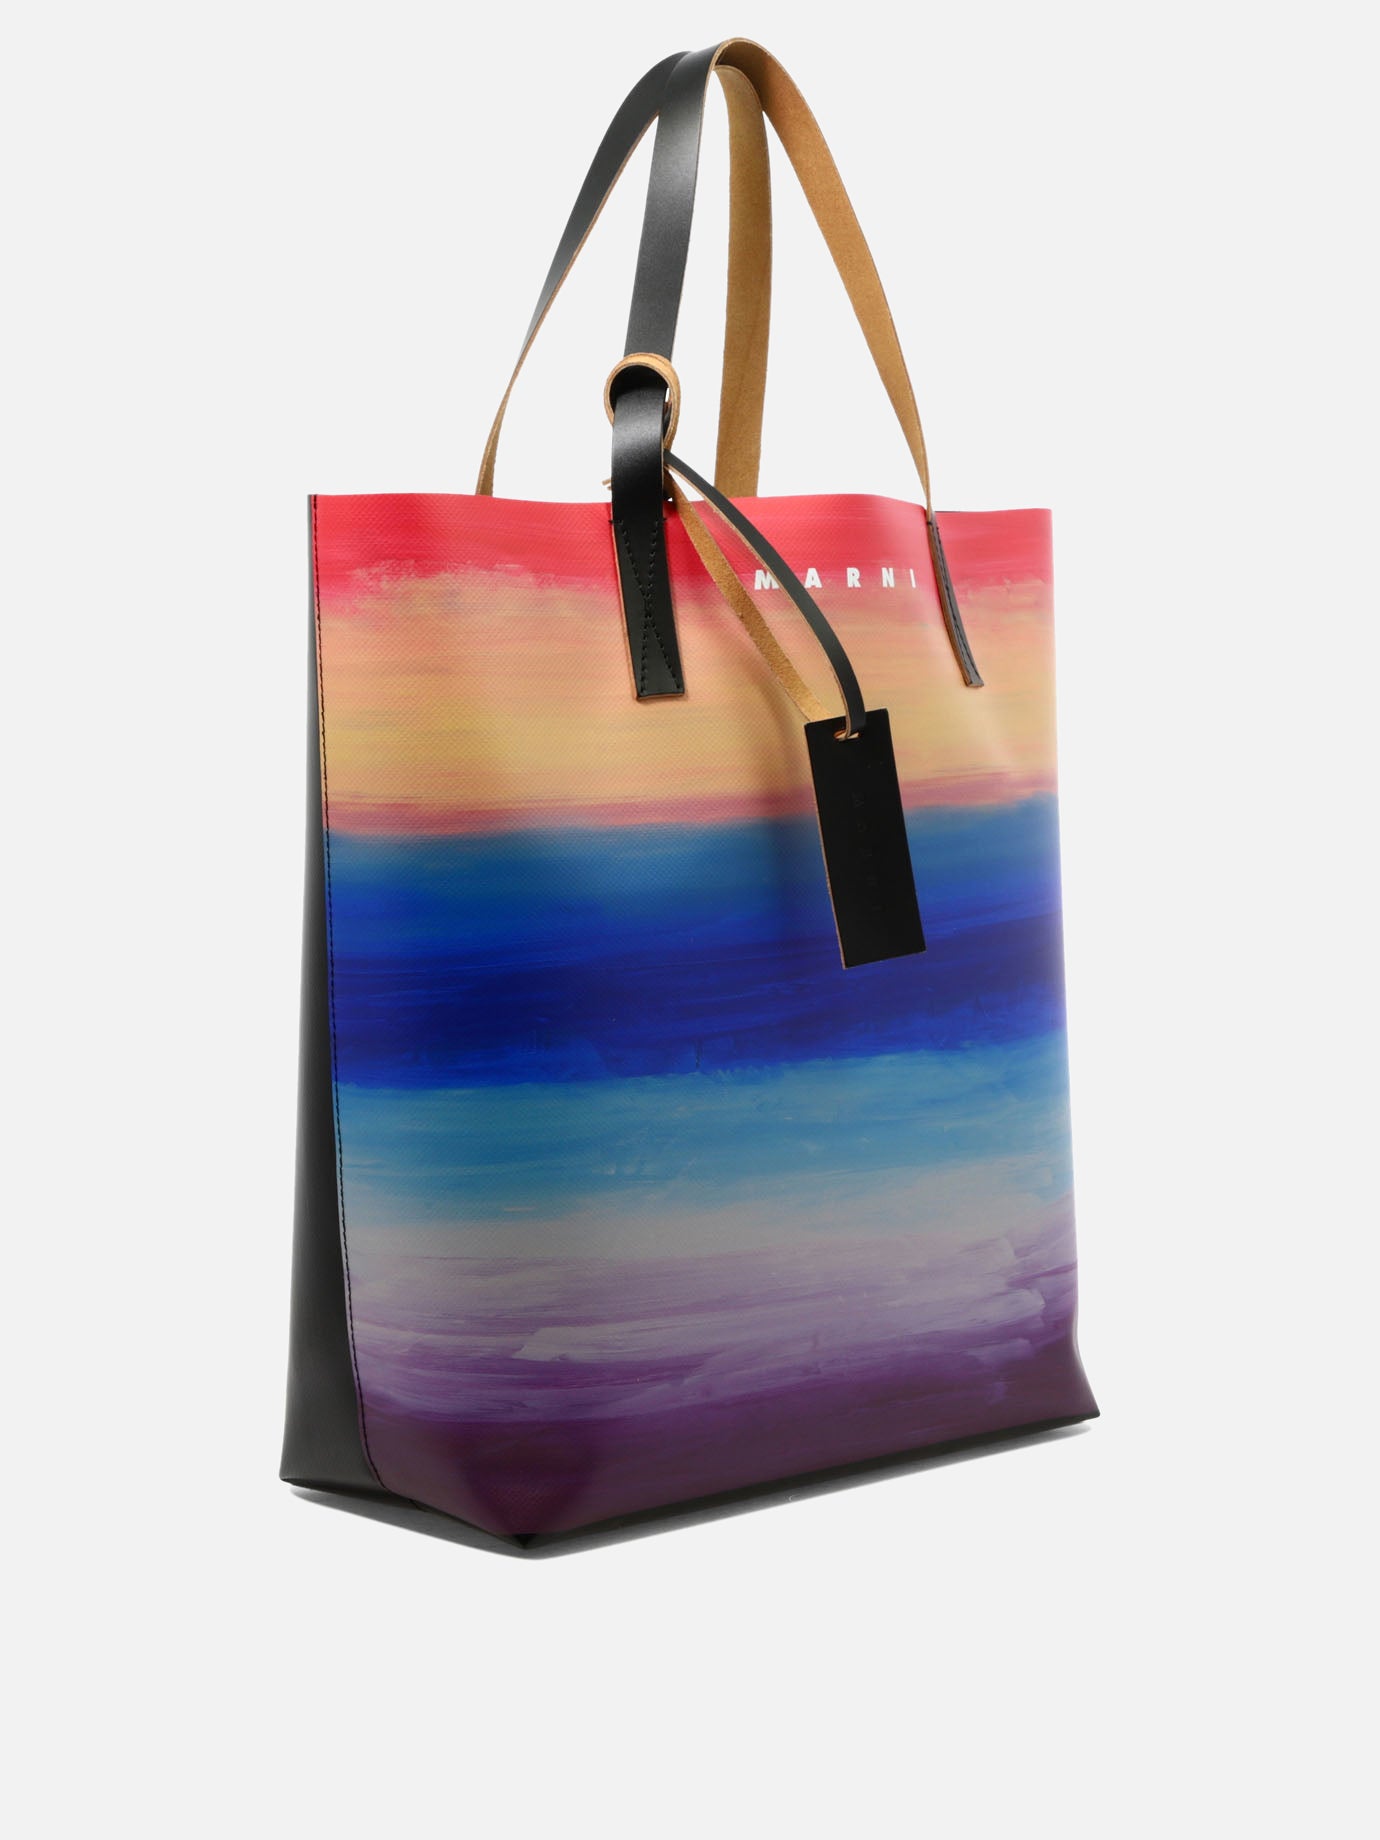 "Tribeca" shopping bag